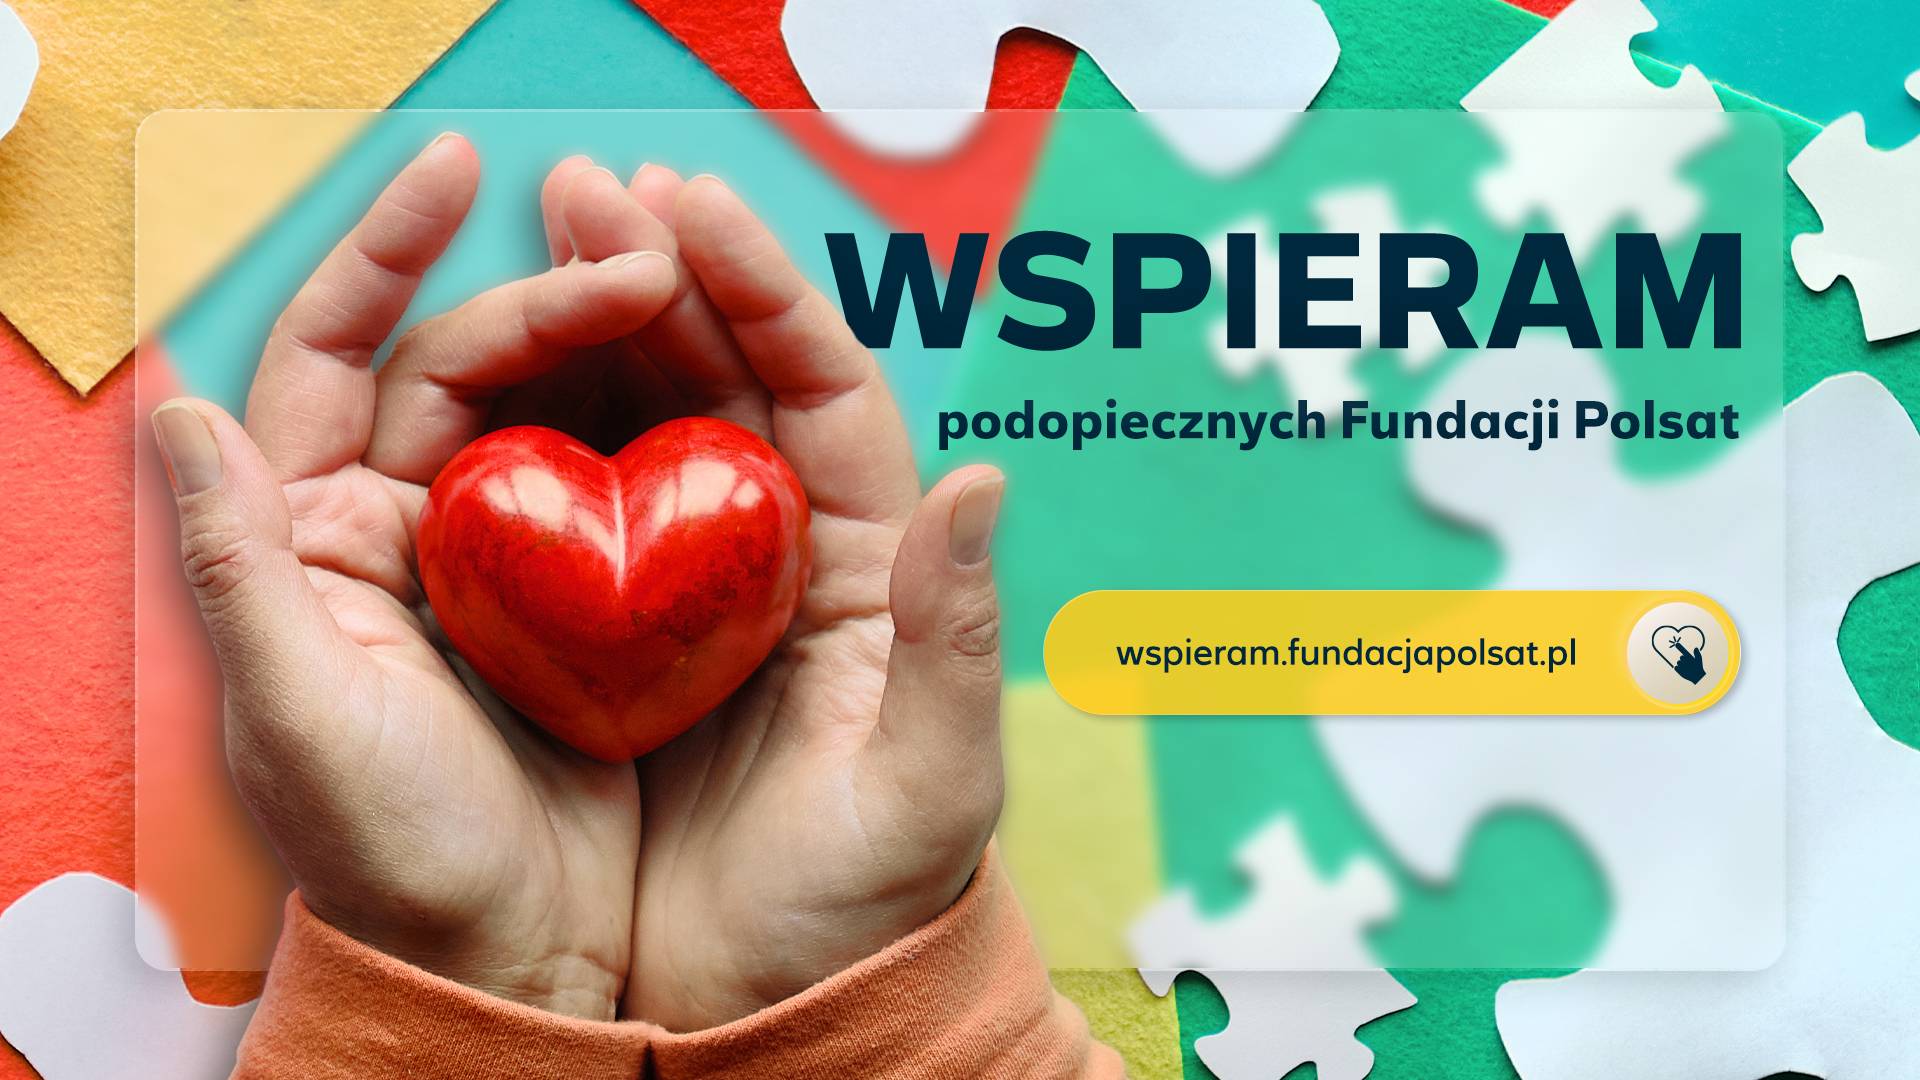 WSPIERAM.fundacjapolsat.pl